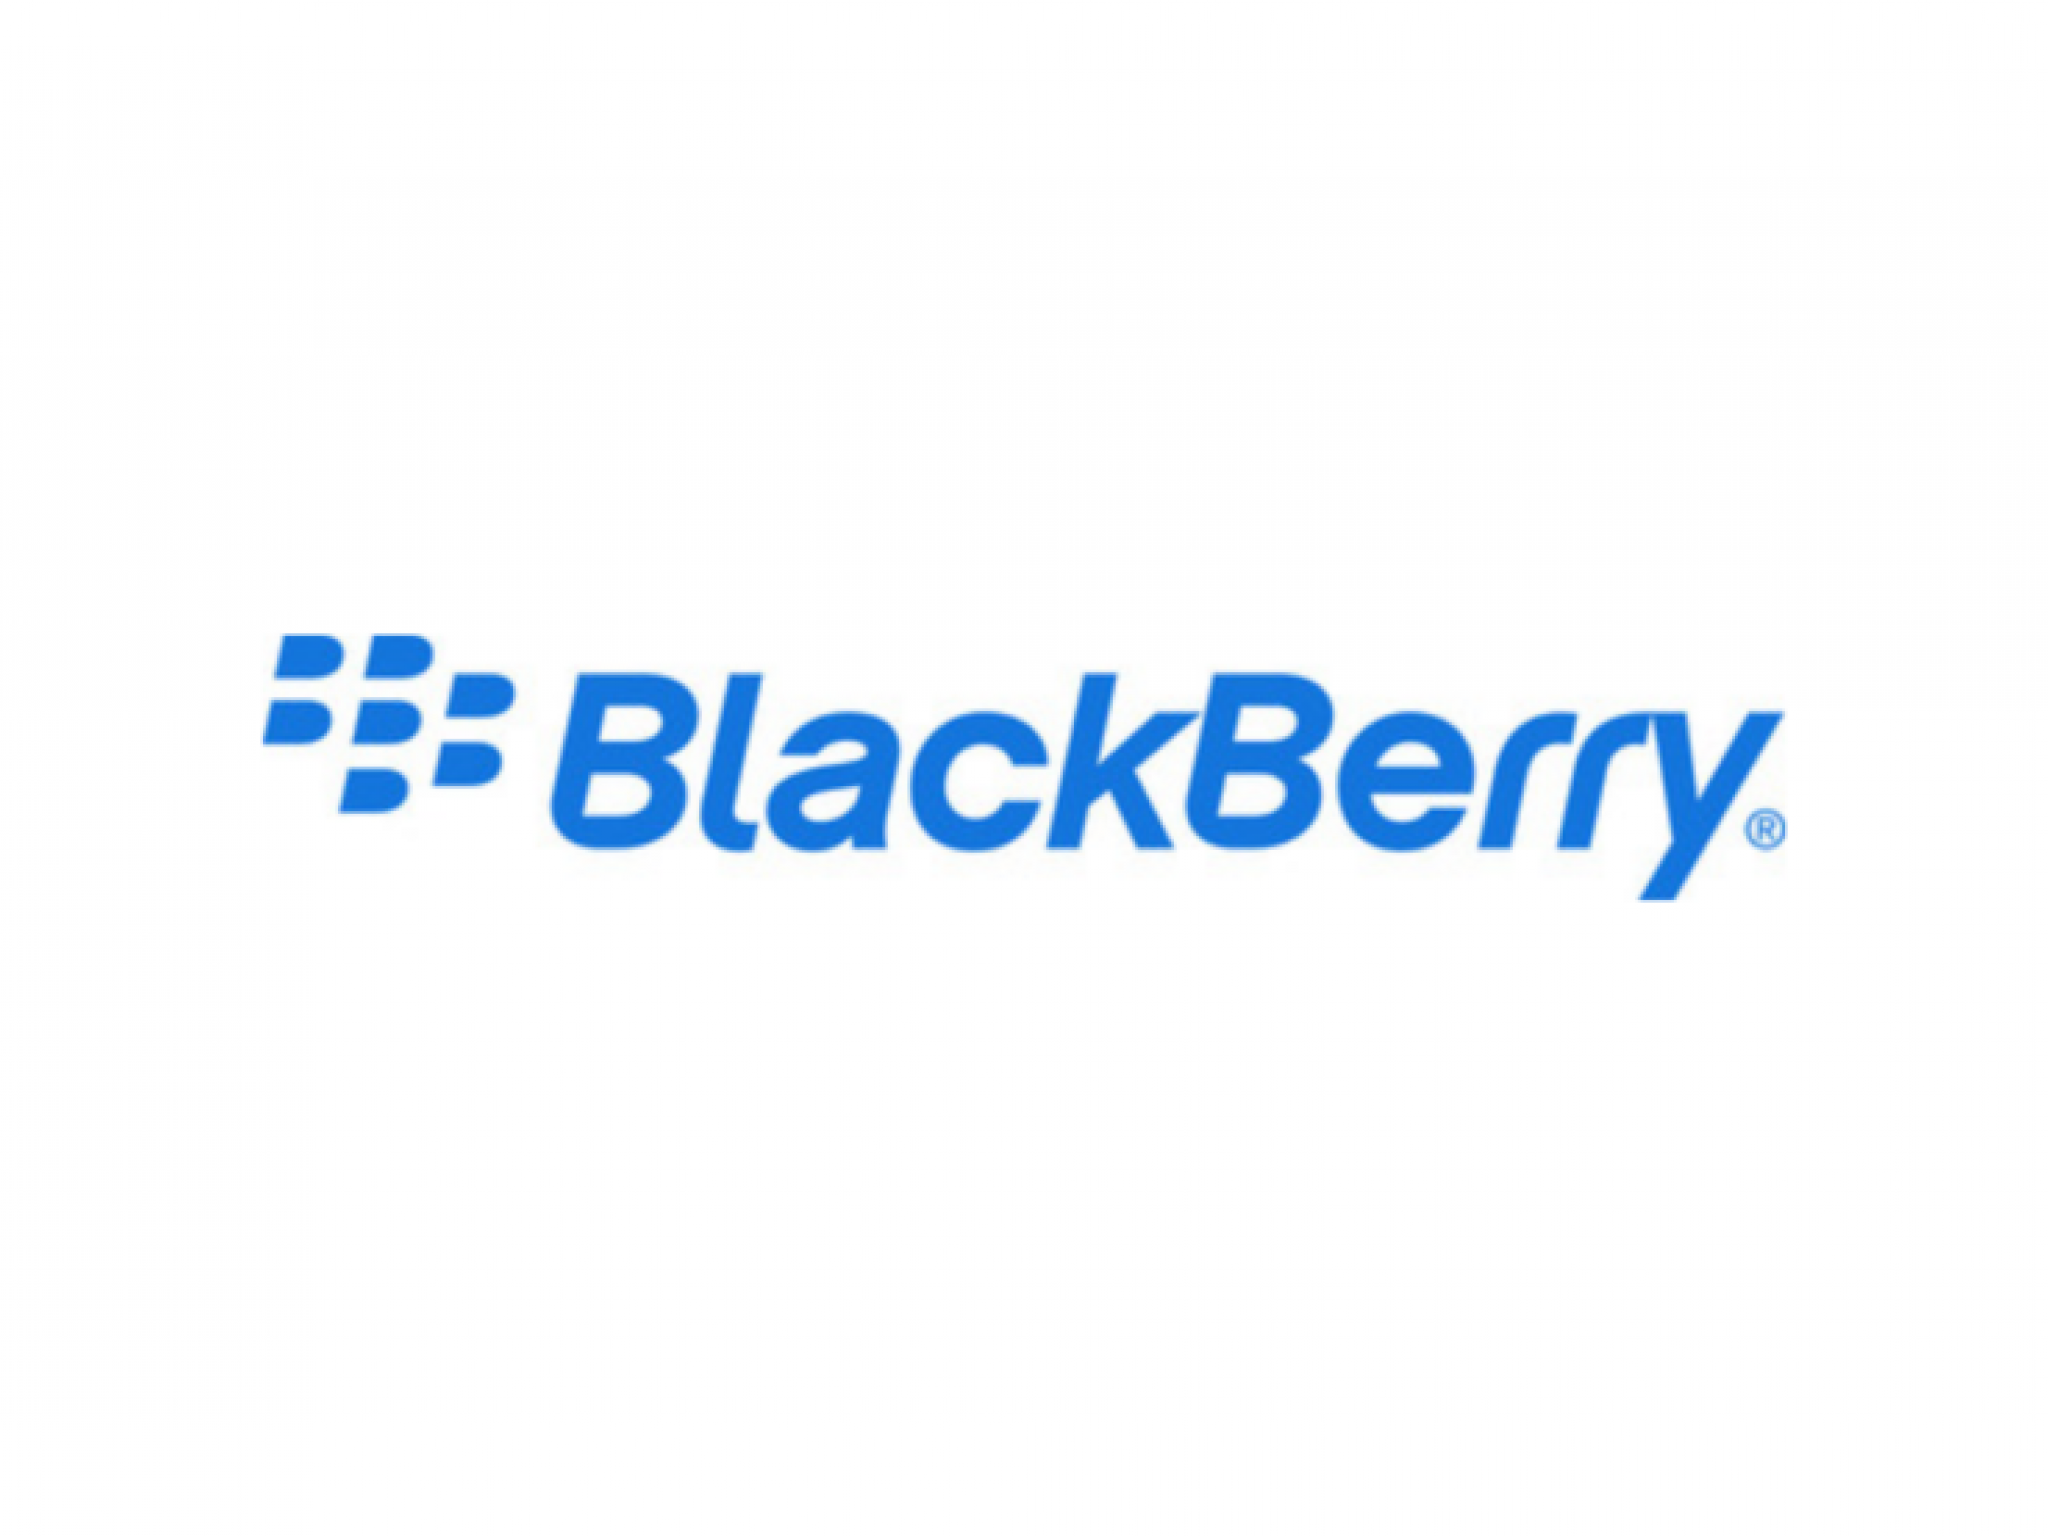  why-blackberry-shares-are-rising-premarket-thursday 